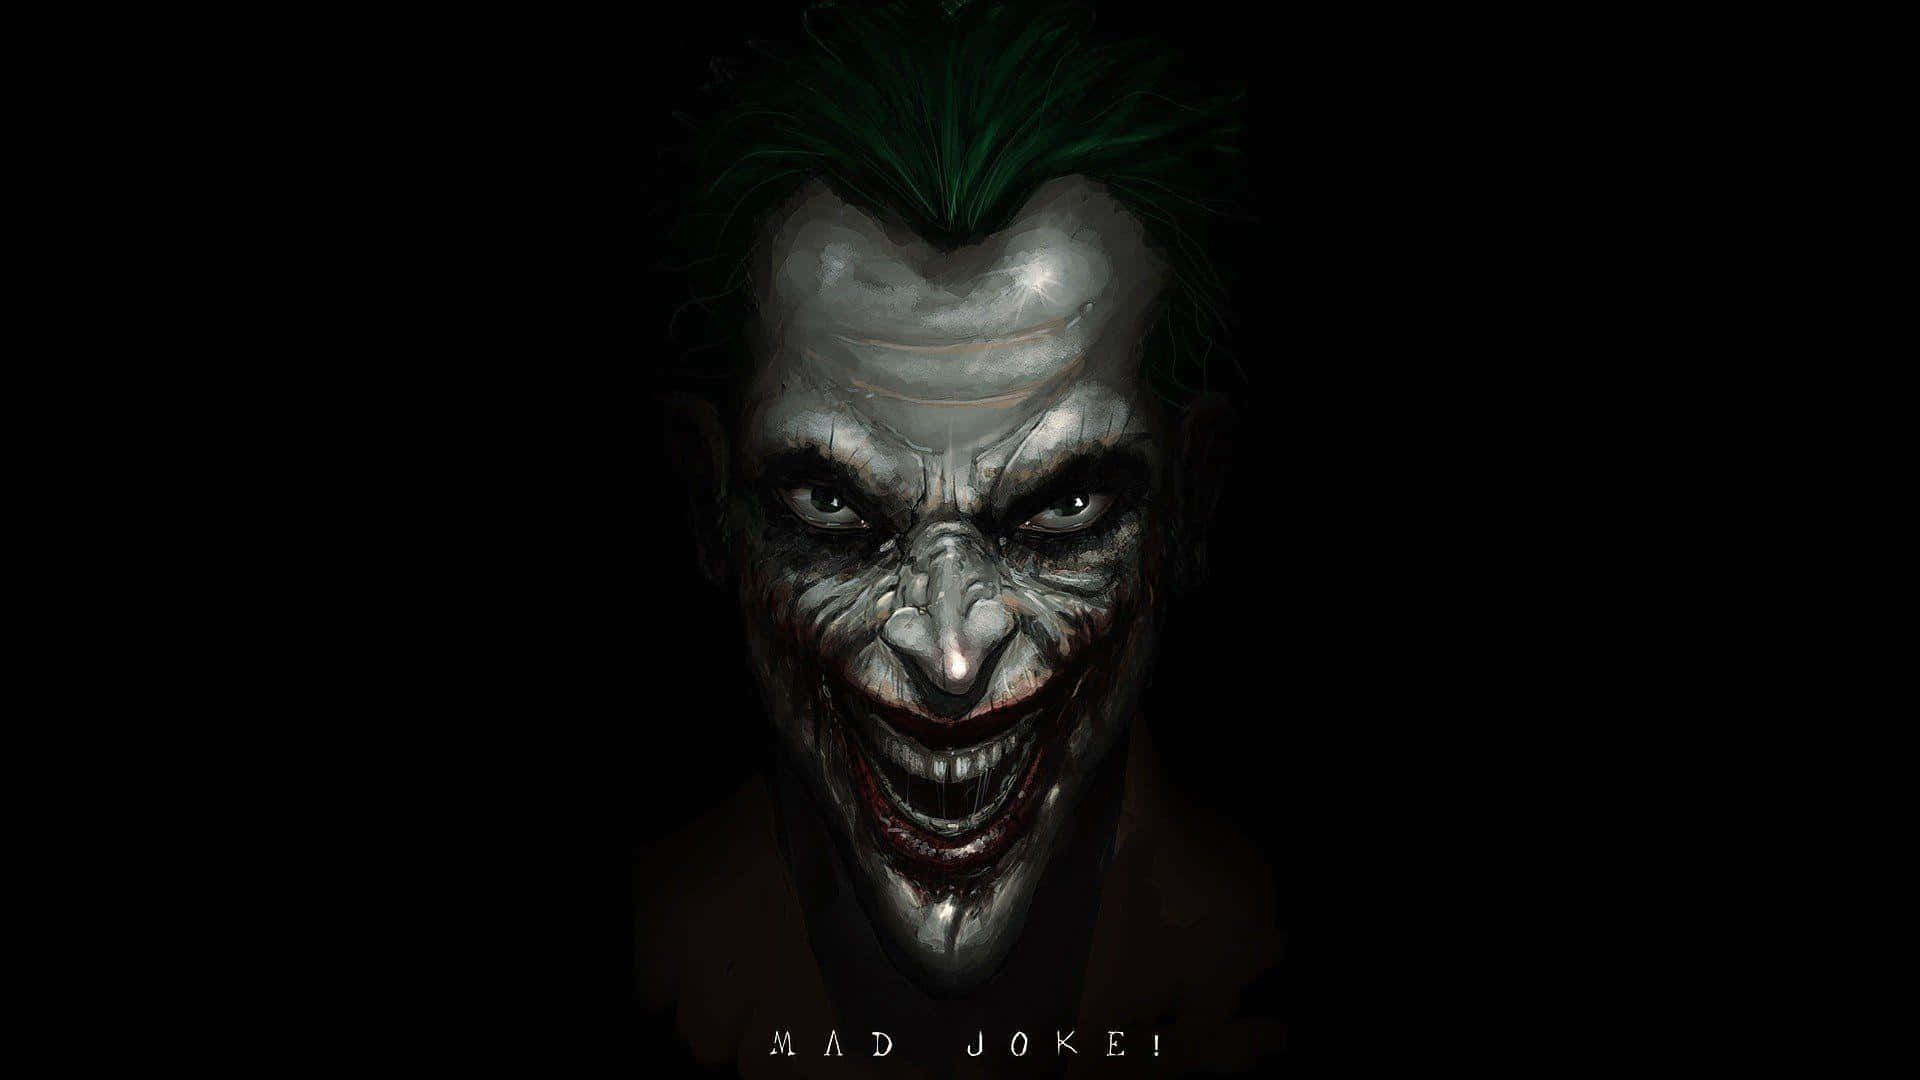 Joker's Maniacal Laughter In The Dark